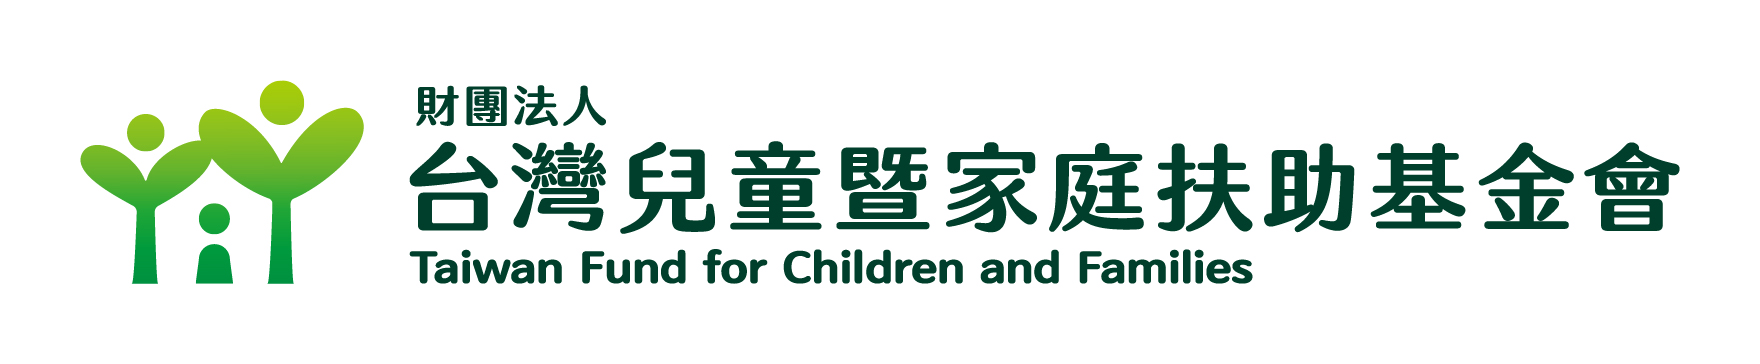 從福祉觀點看家庭支持與育兒政策國際研討會-台灣兒童暨家庭扶助基金會